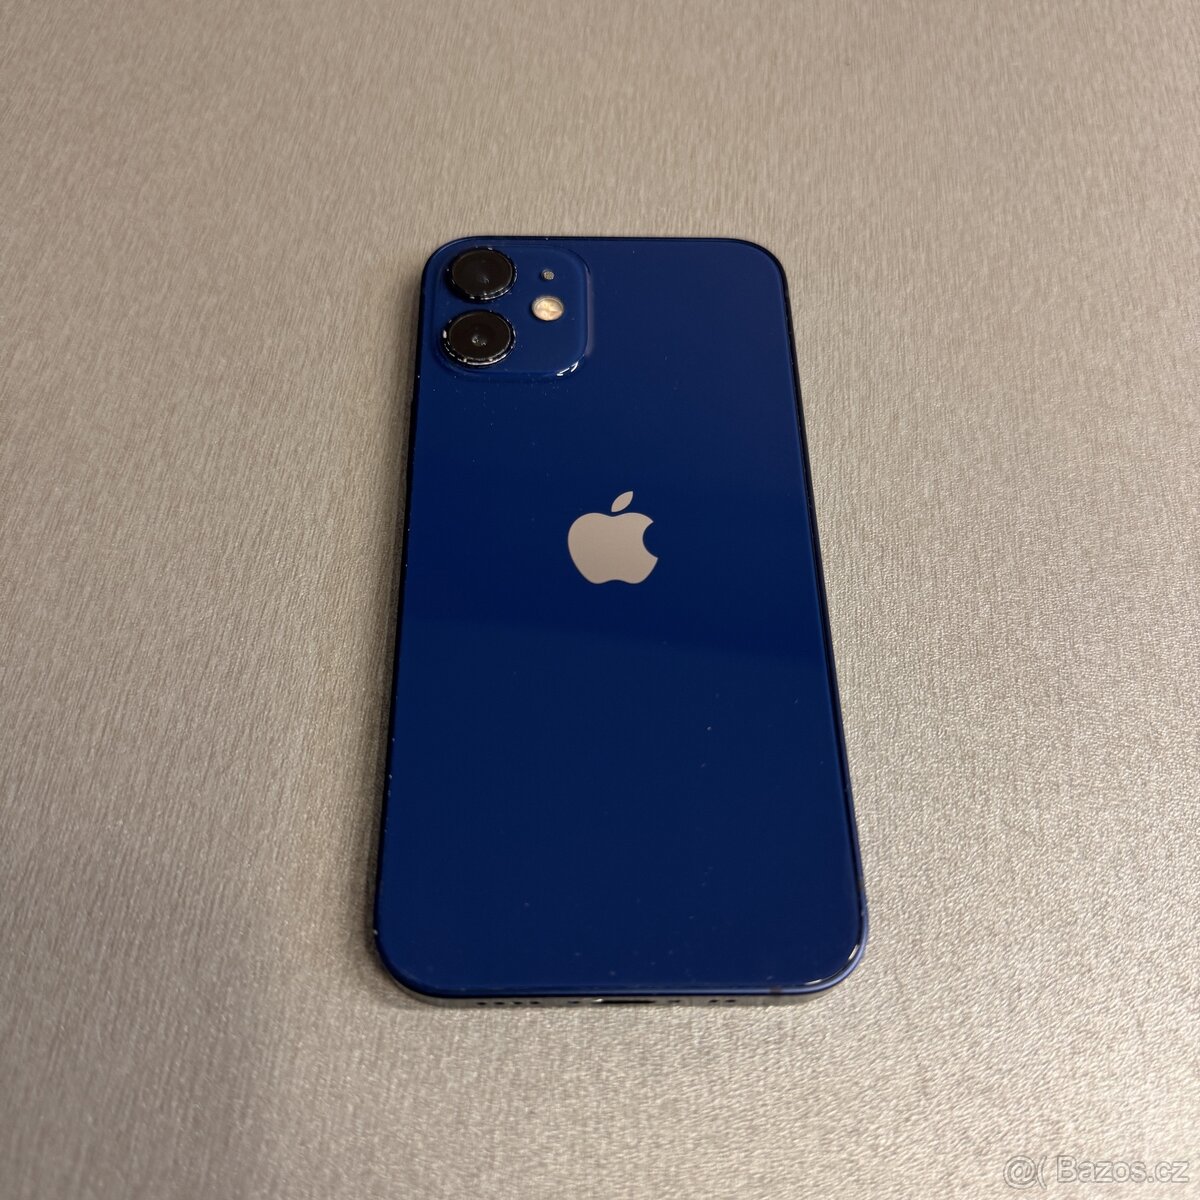 iPhone 12 mini 128GB modrý, pěkný stav, 12 měsíců záruka